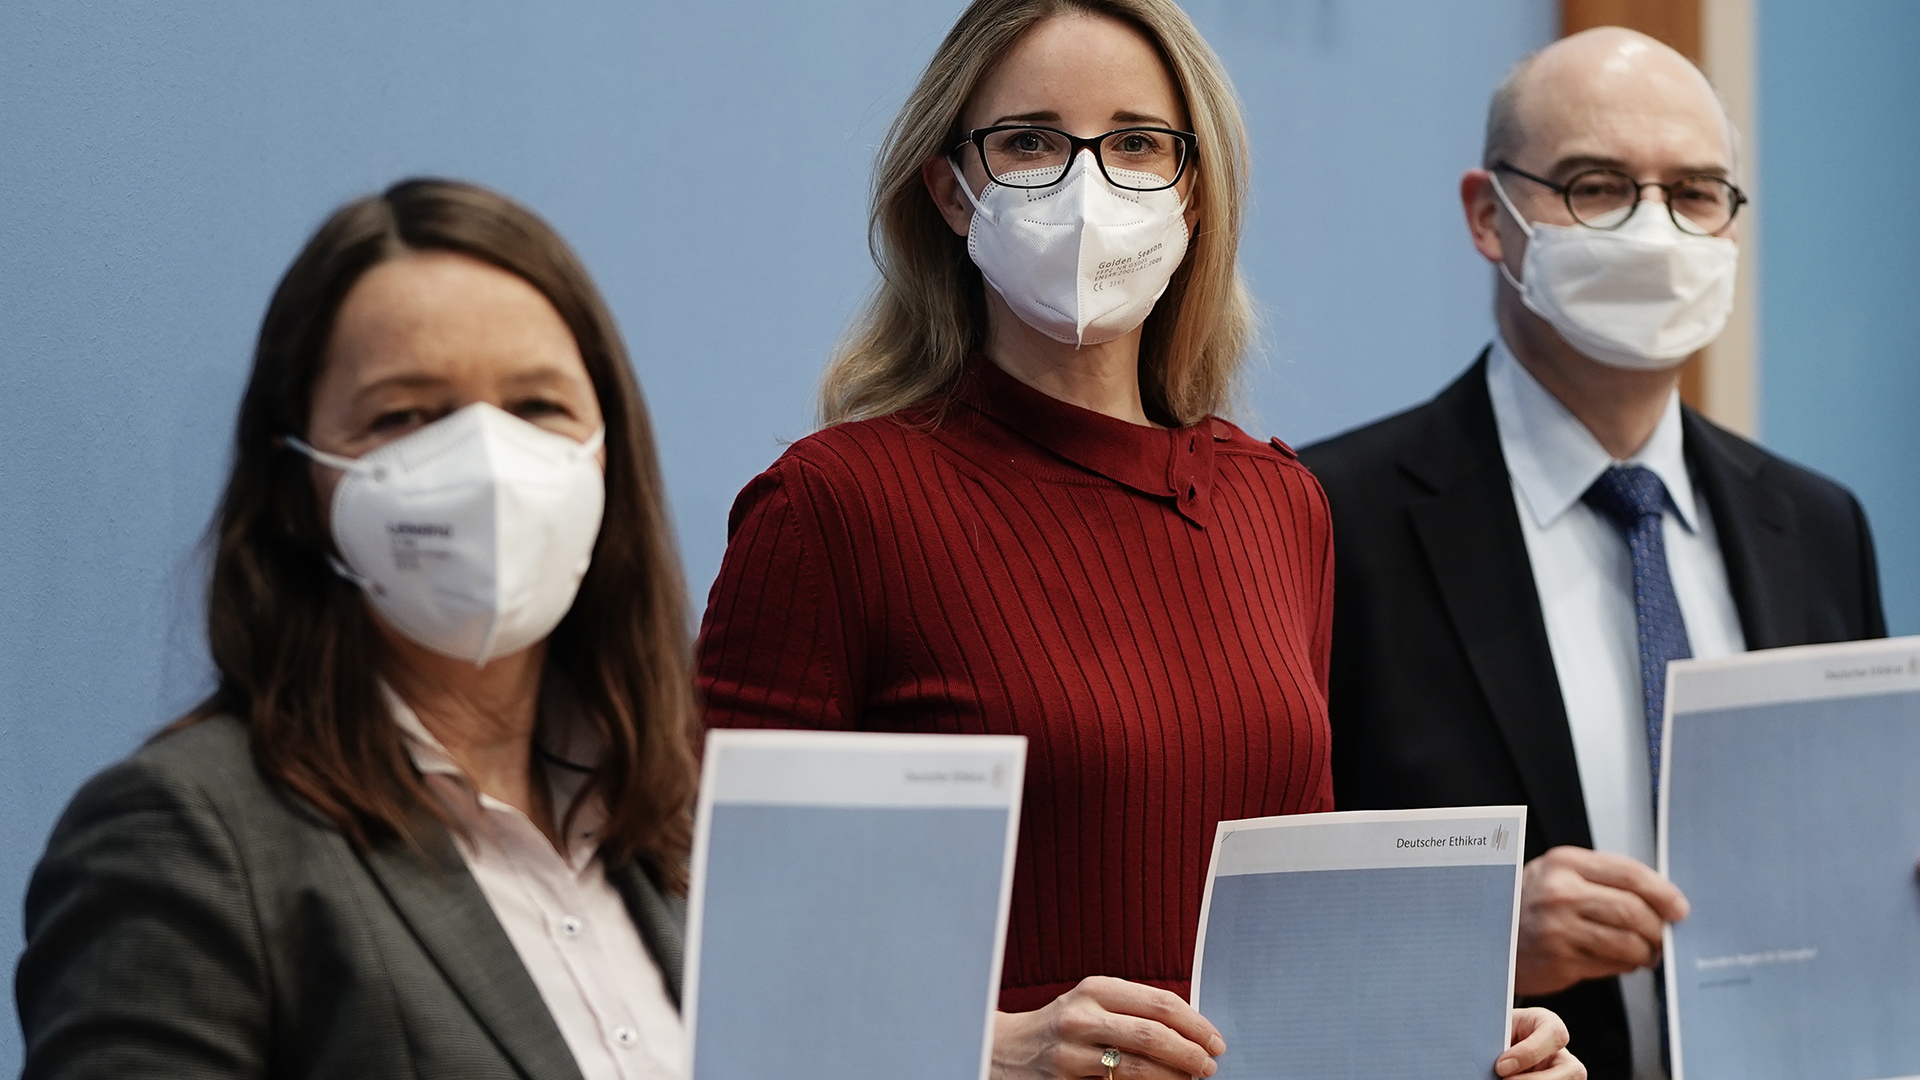 Geimpfte in der Pandemie: Ethikrat hält Auflagen für zumutbar